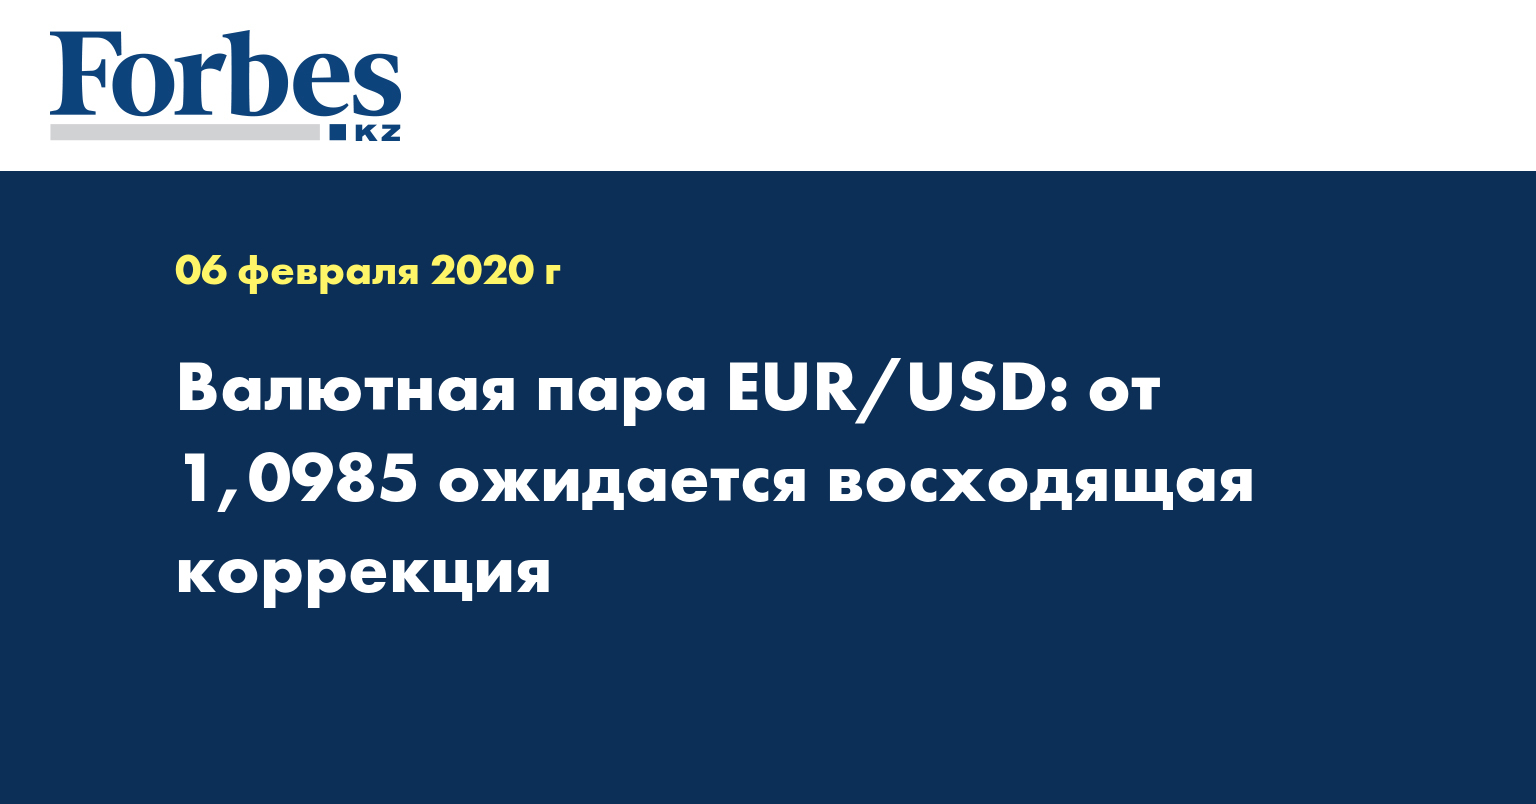 Валютная пара EUR/USD: от 1,0985 ожидается восходящая коррекция